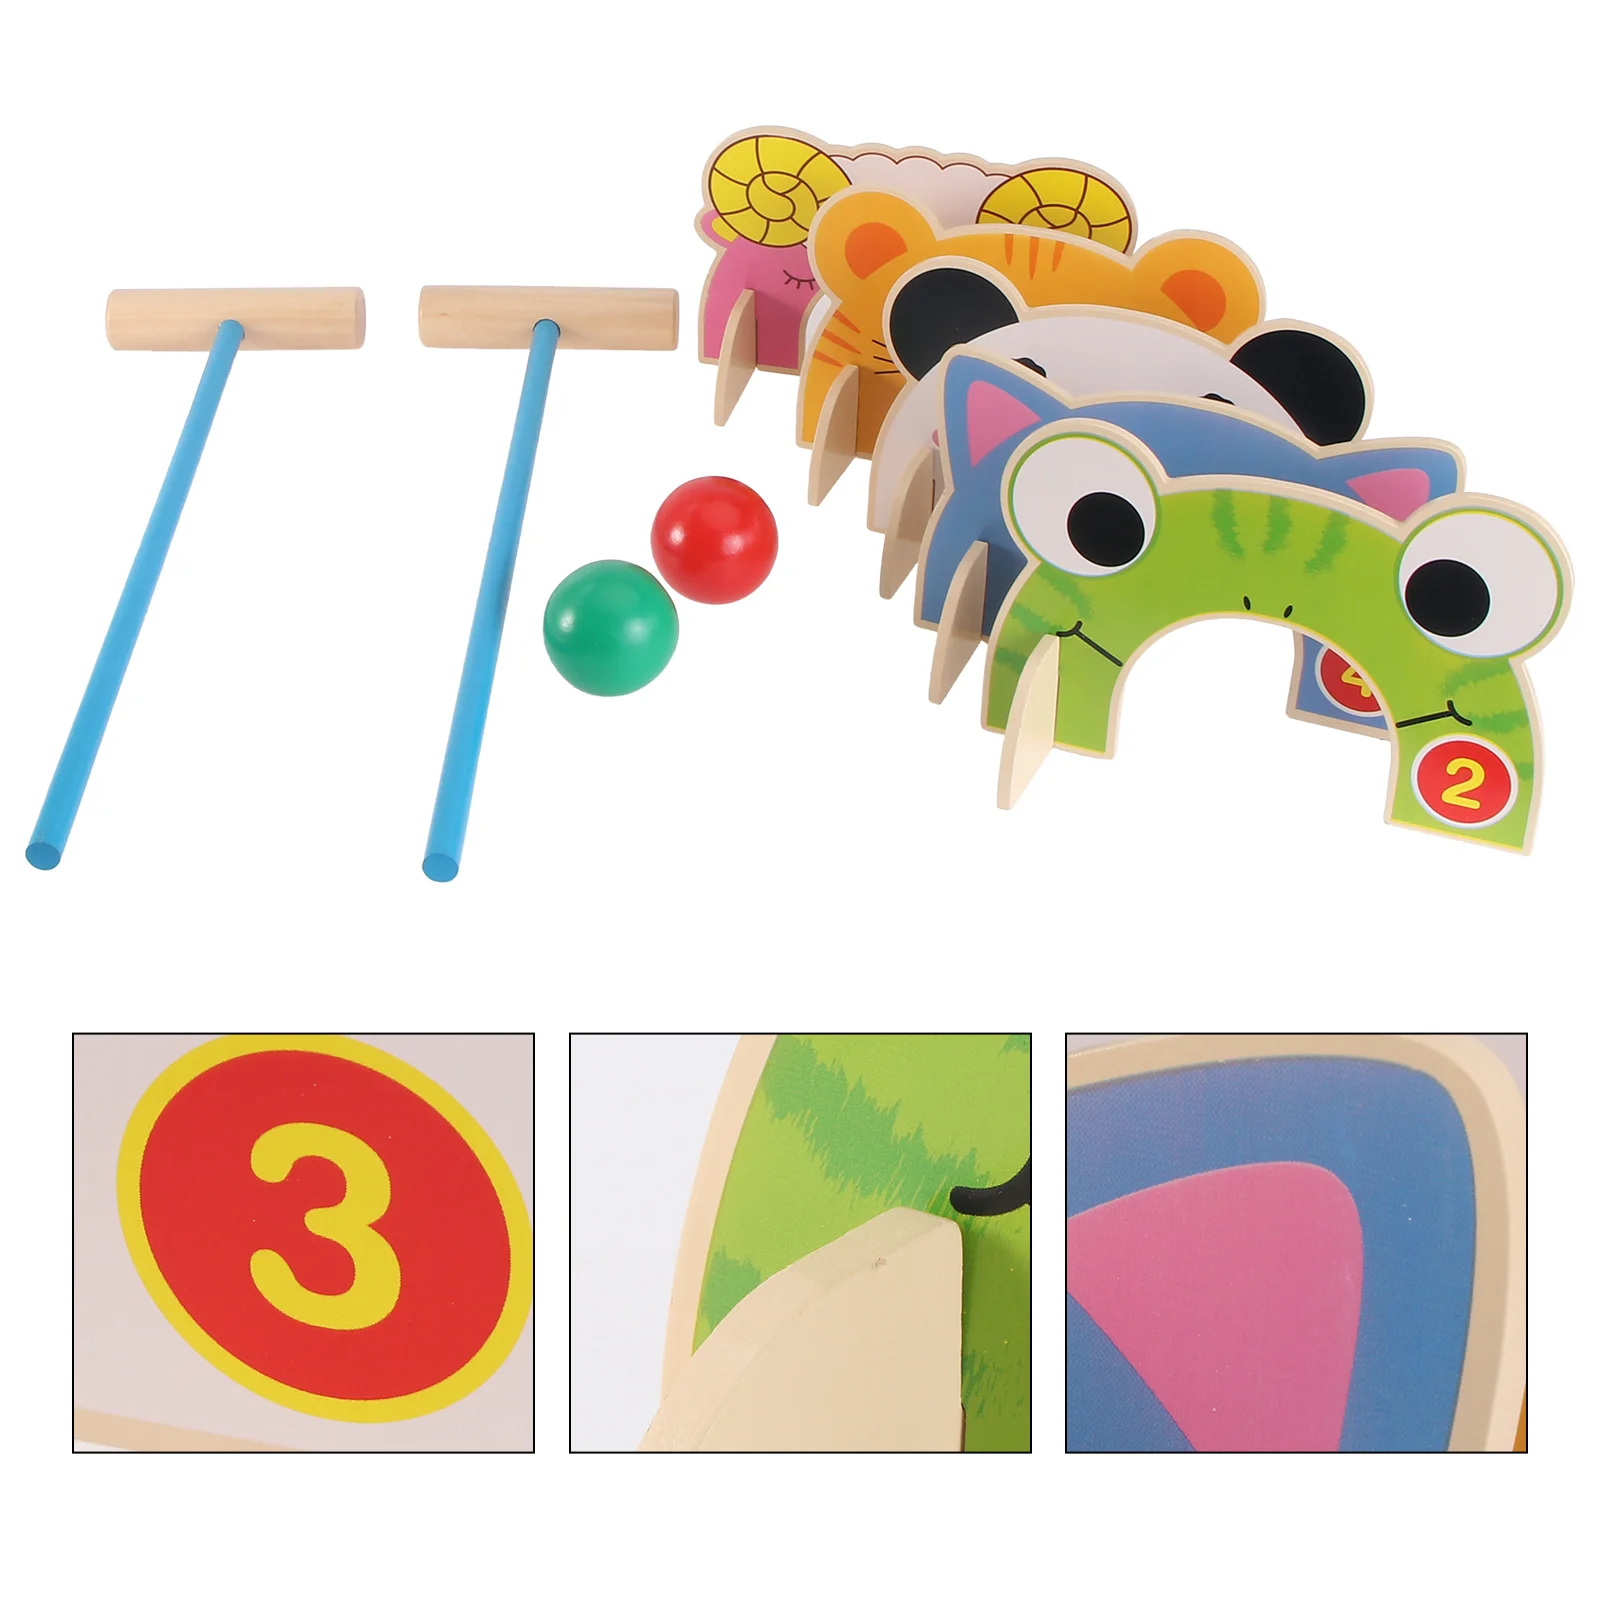 

Набор детских игрушечных крокетов, Интерактивная деревянная игра в два вида, для игр на открытом воздухе, для малышей